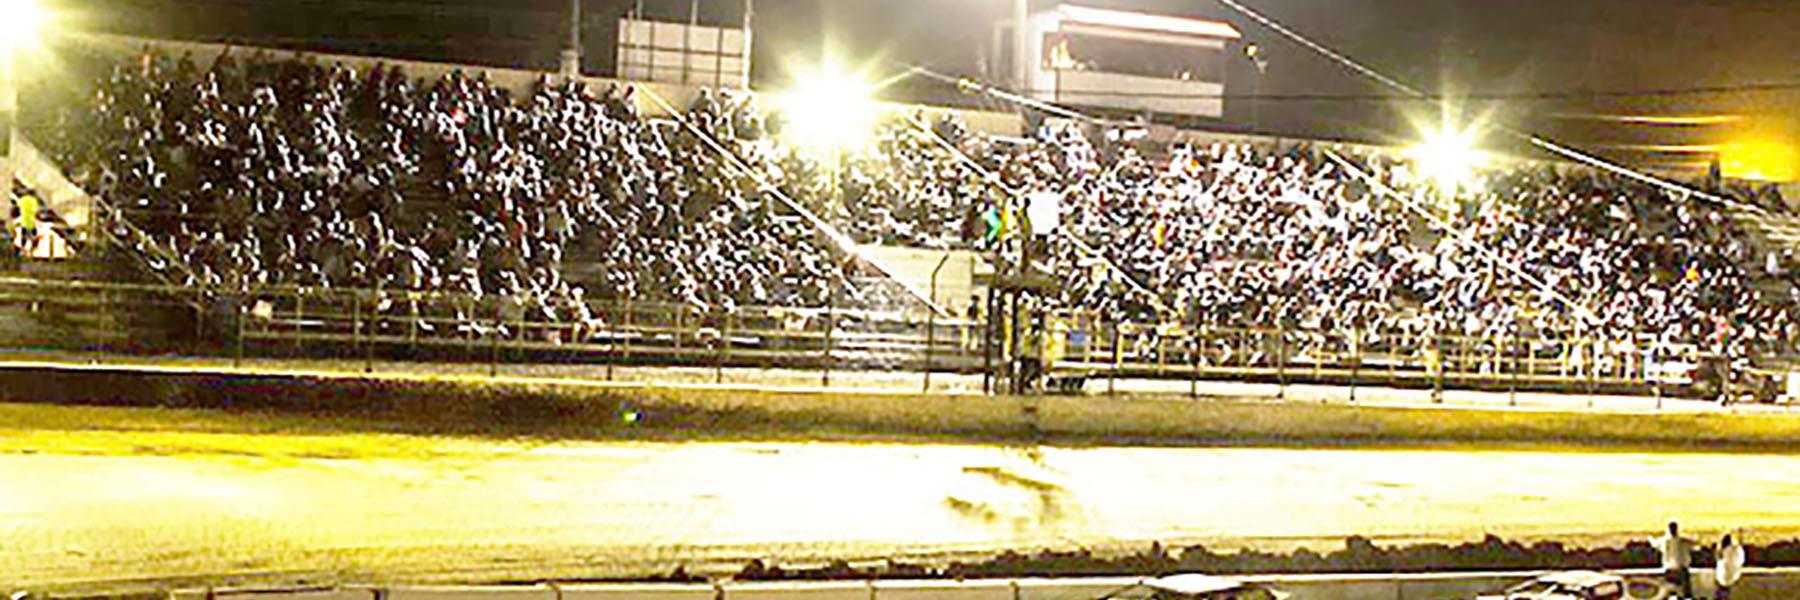 10/27/2022 - Tri-State Speedway